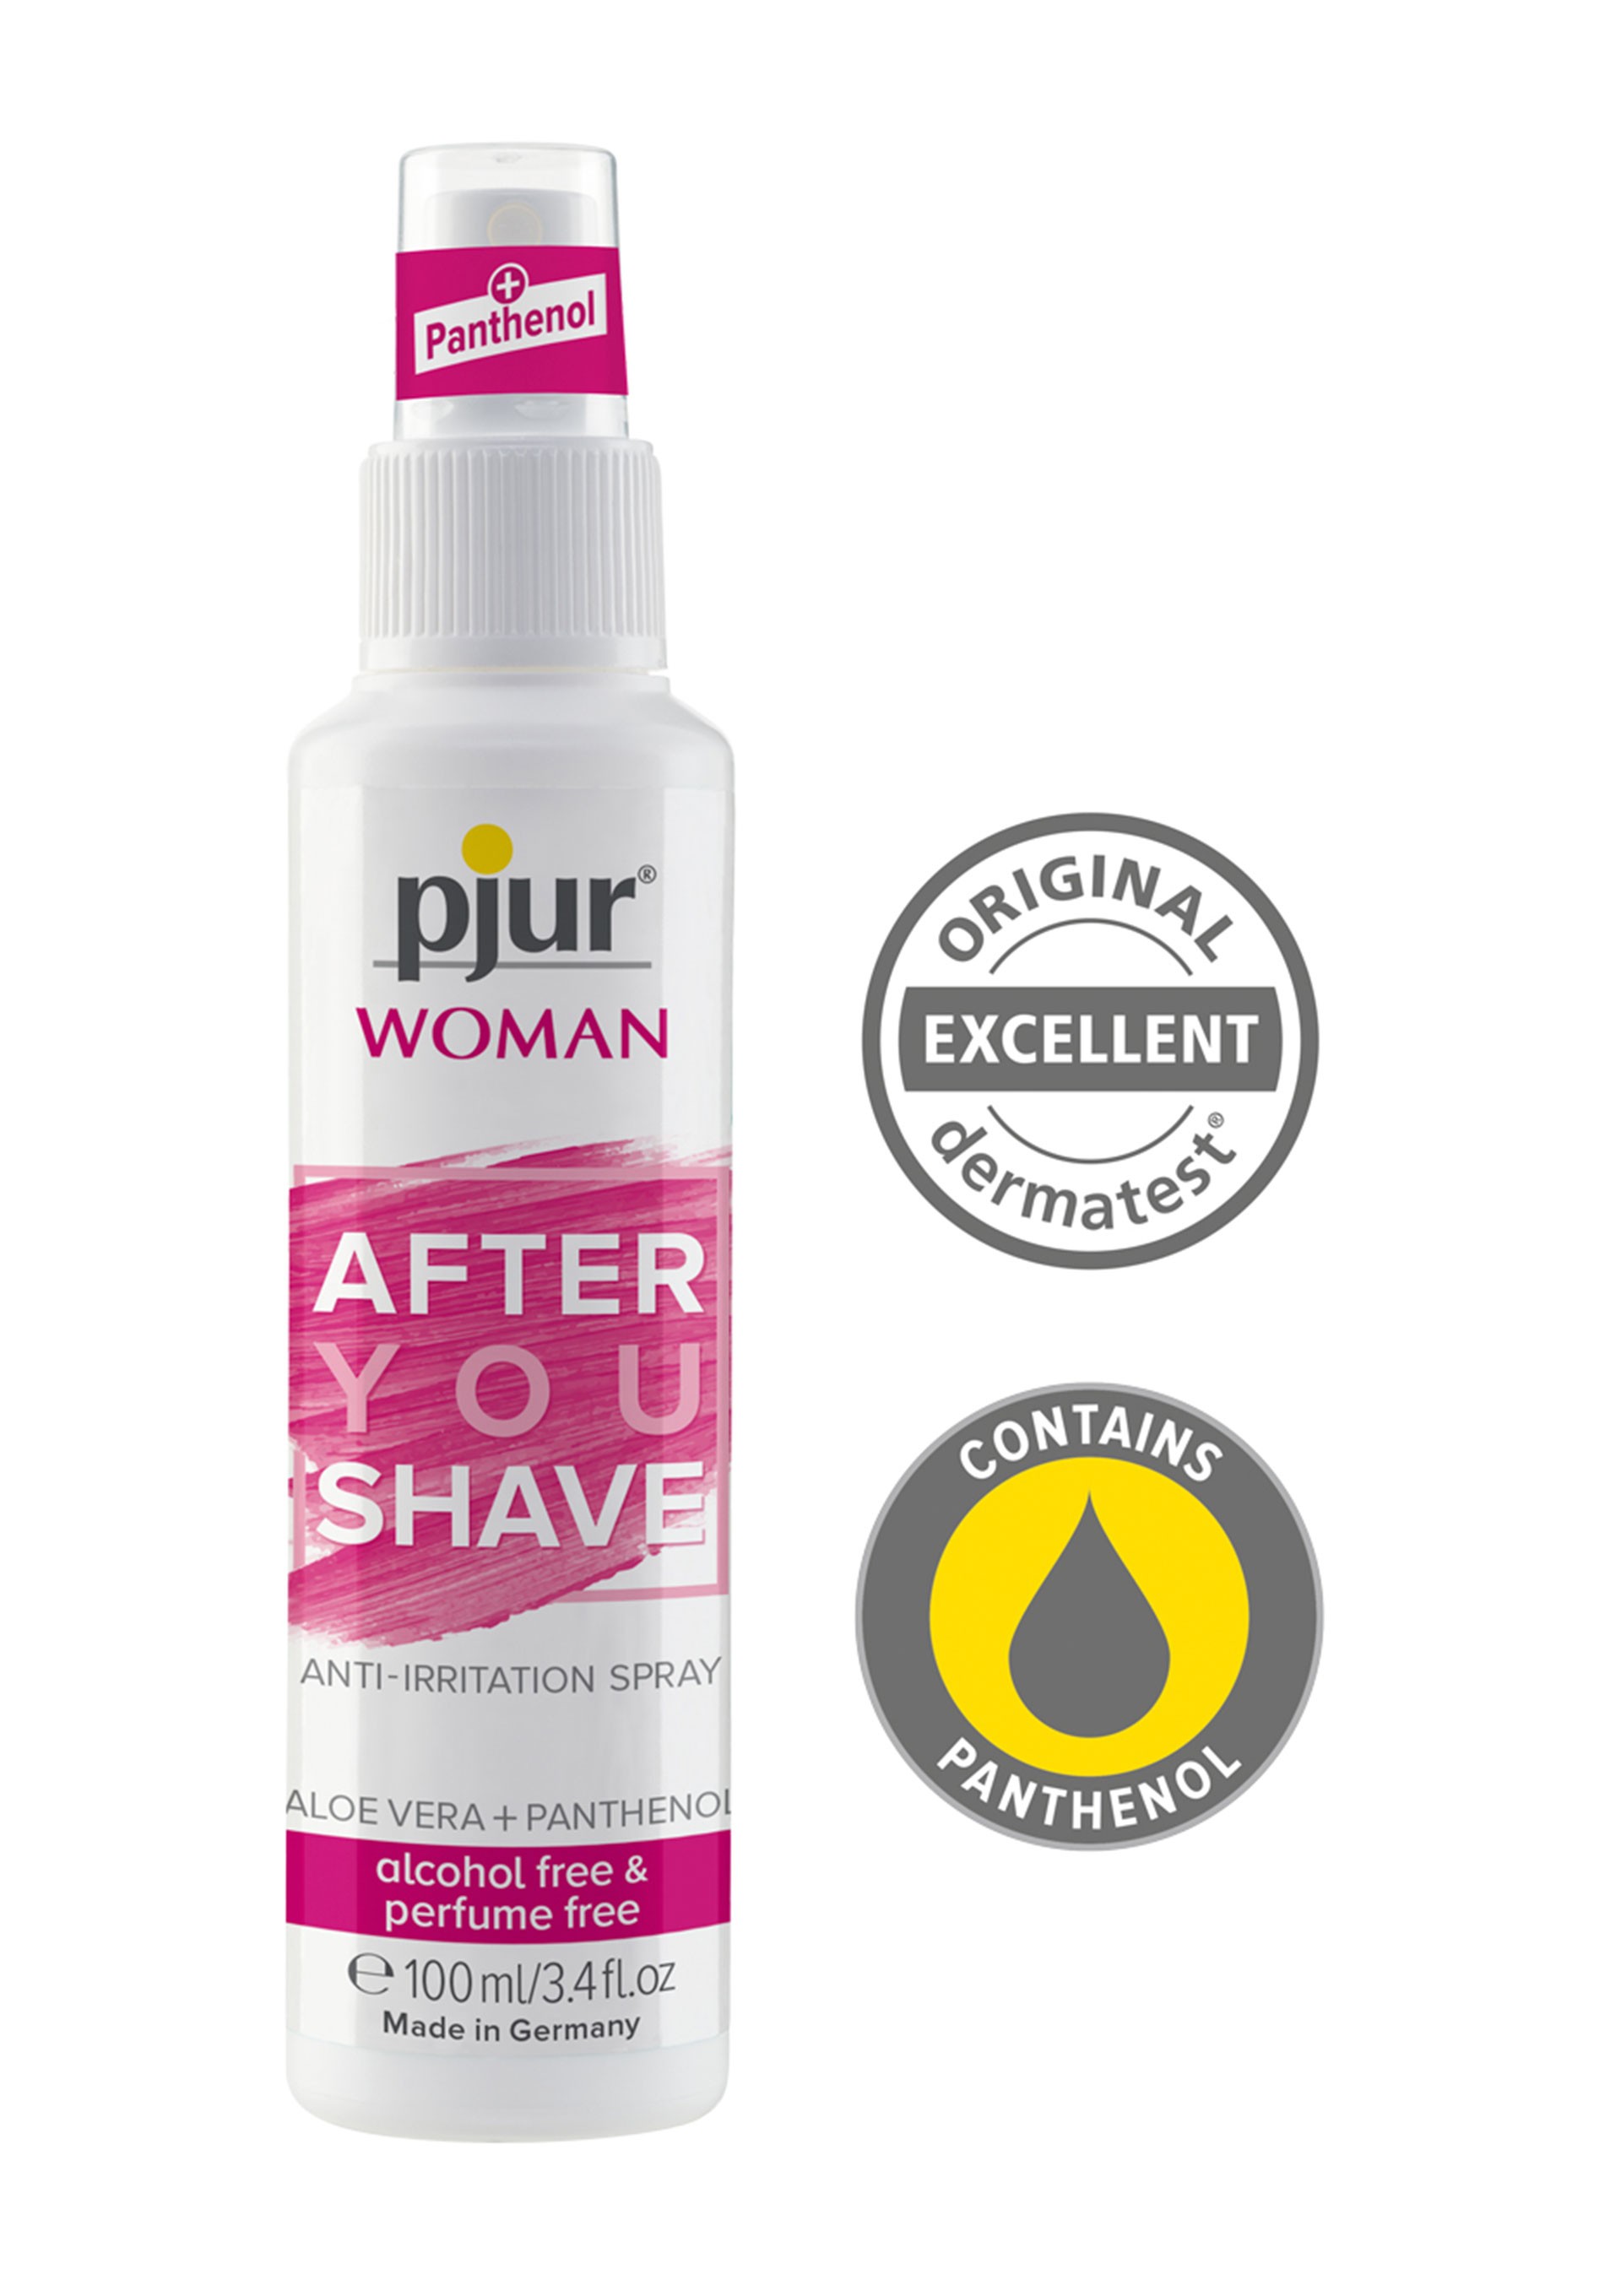 Pjur Woman After Shave Spray 100 ml Kayganlaştırıcı Jel